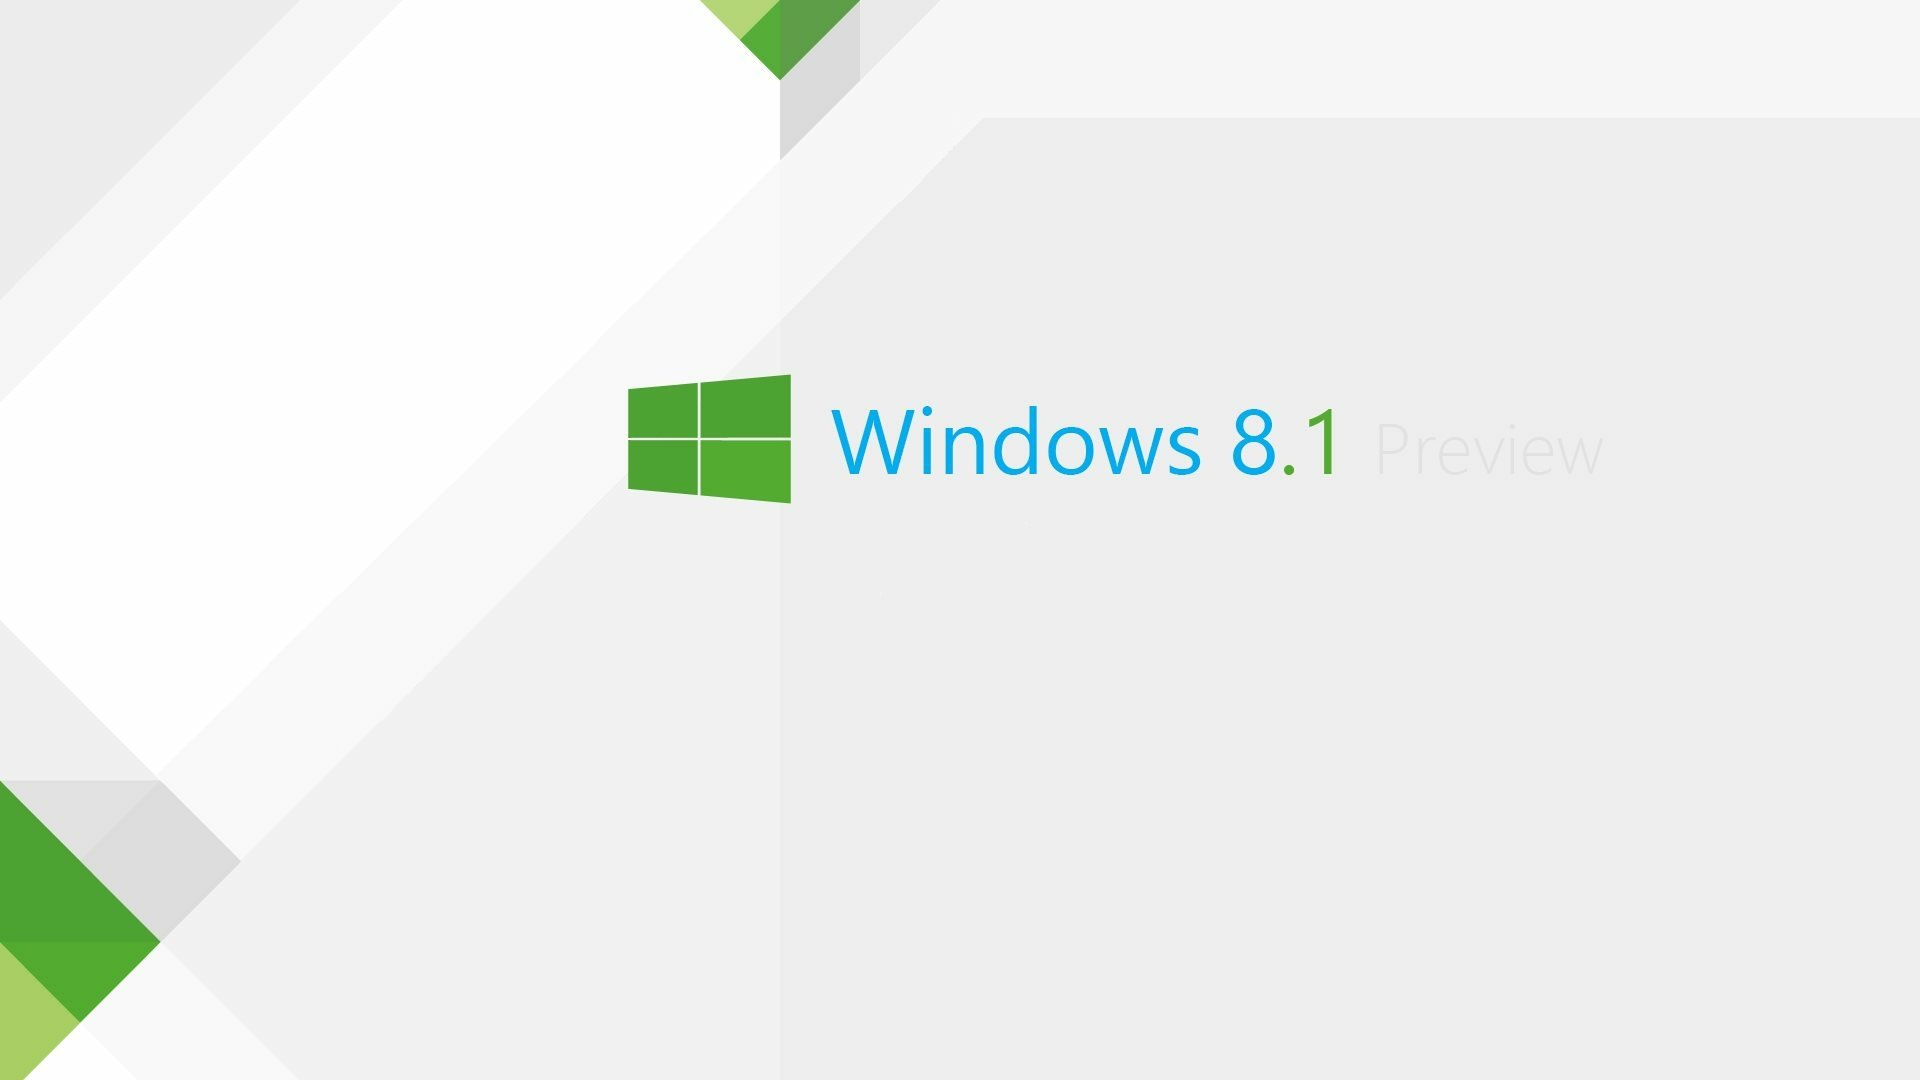 Hình nền HD cho Windows 8.1 giúp bạn có được trải nghiệm trực quan tuyệt vời trên máy tính của bạn. Không chỉ màu sắc rực rỡ, độ phân giải cao còn giúp hình ảnh trở nên chân thật và đẹp mắt hơn bao giờ hết. Truy cập ngay để tải về hình nền HD Windows 8.